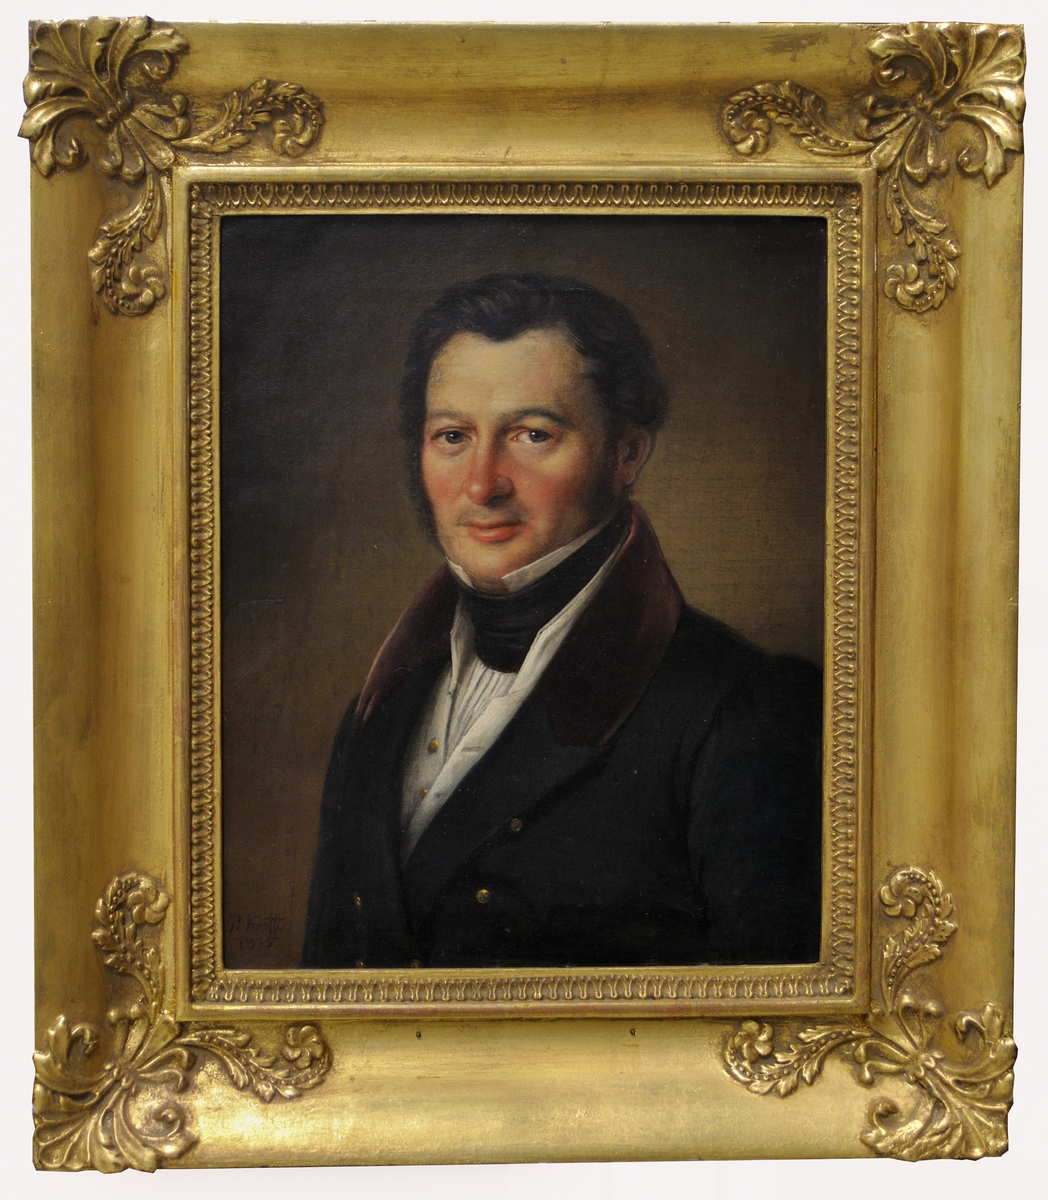 Rober Lönnerberg (1794-1862) var häradshövding vid Gästrike domsaga och är på porträttet iförd civiluniform.
Målningen har tidigar ägts av fröken Therese Hålén, dotterdotter till Robert Lönnerberg.
Montering/Ram: Förgylld originalram